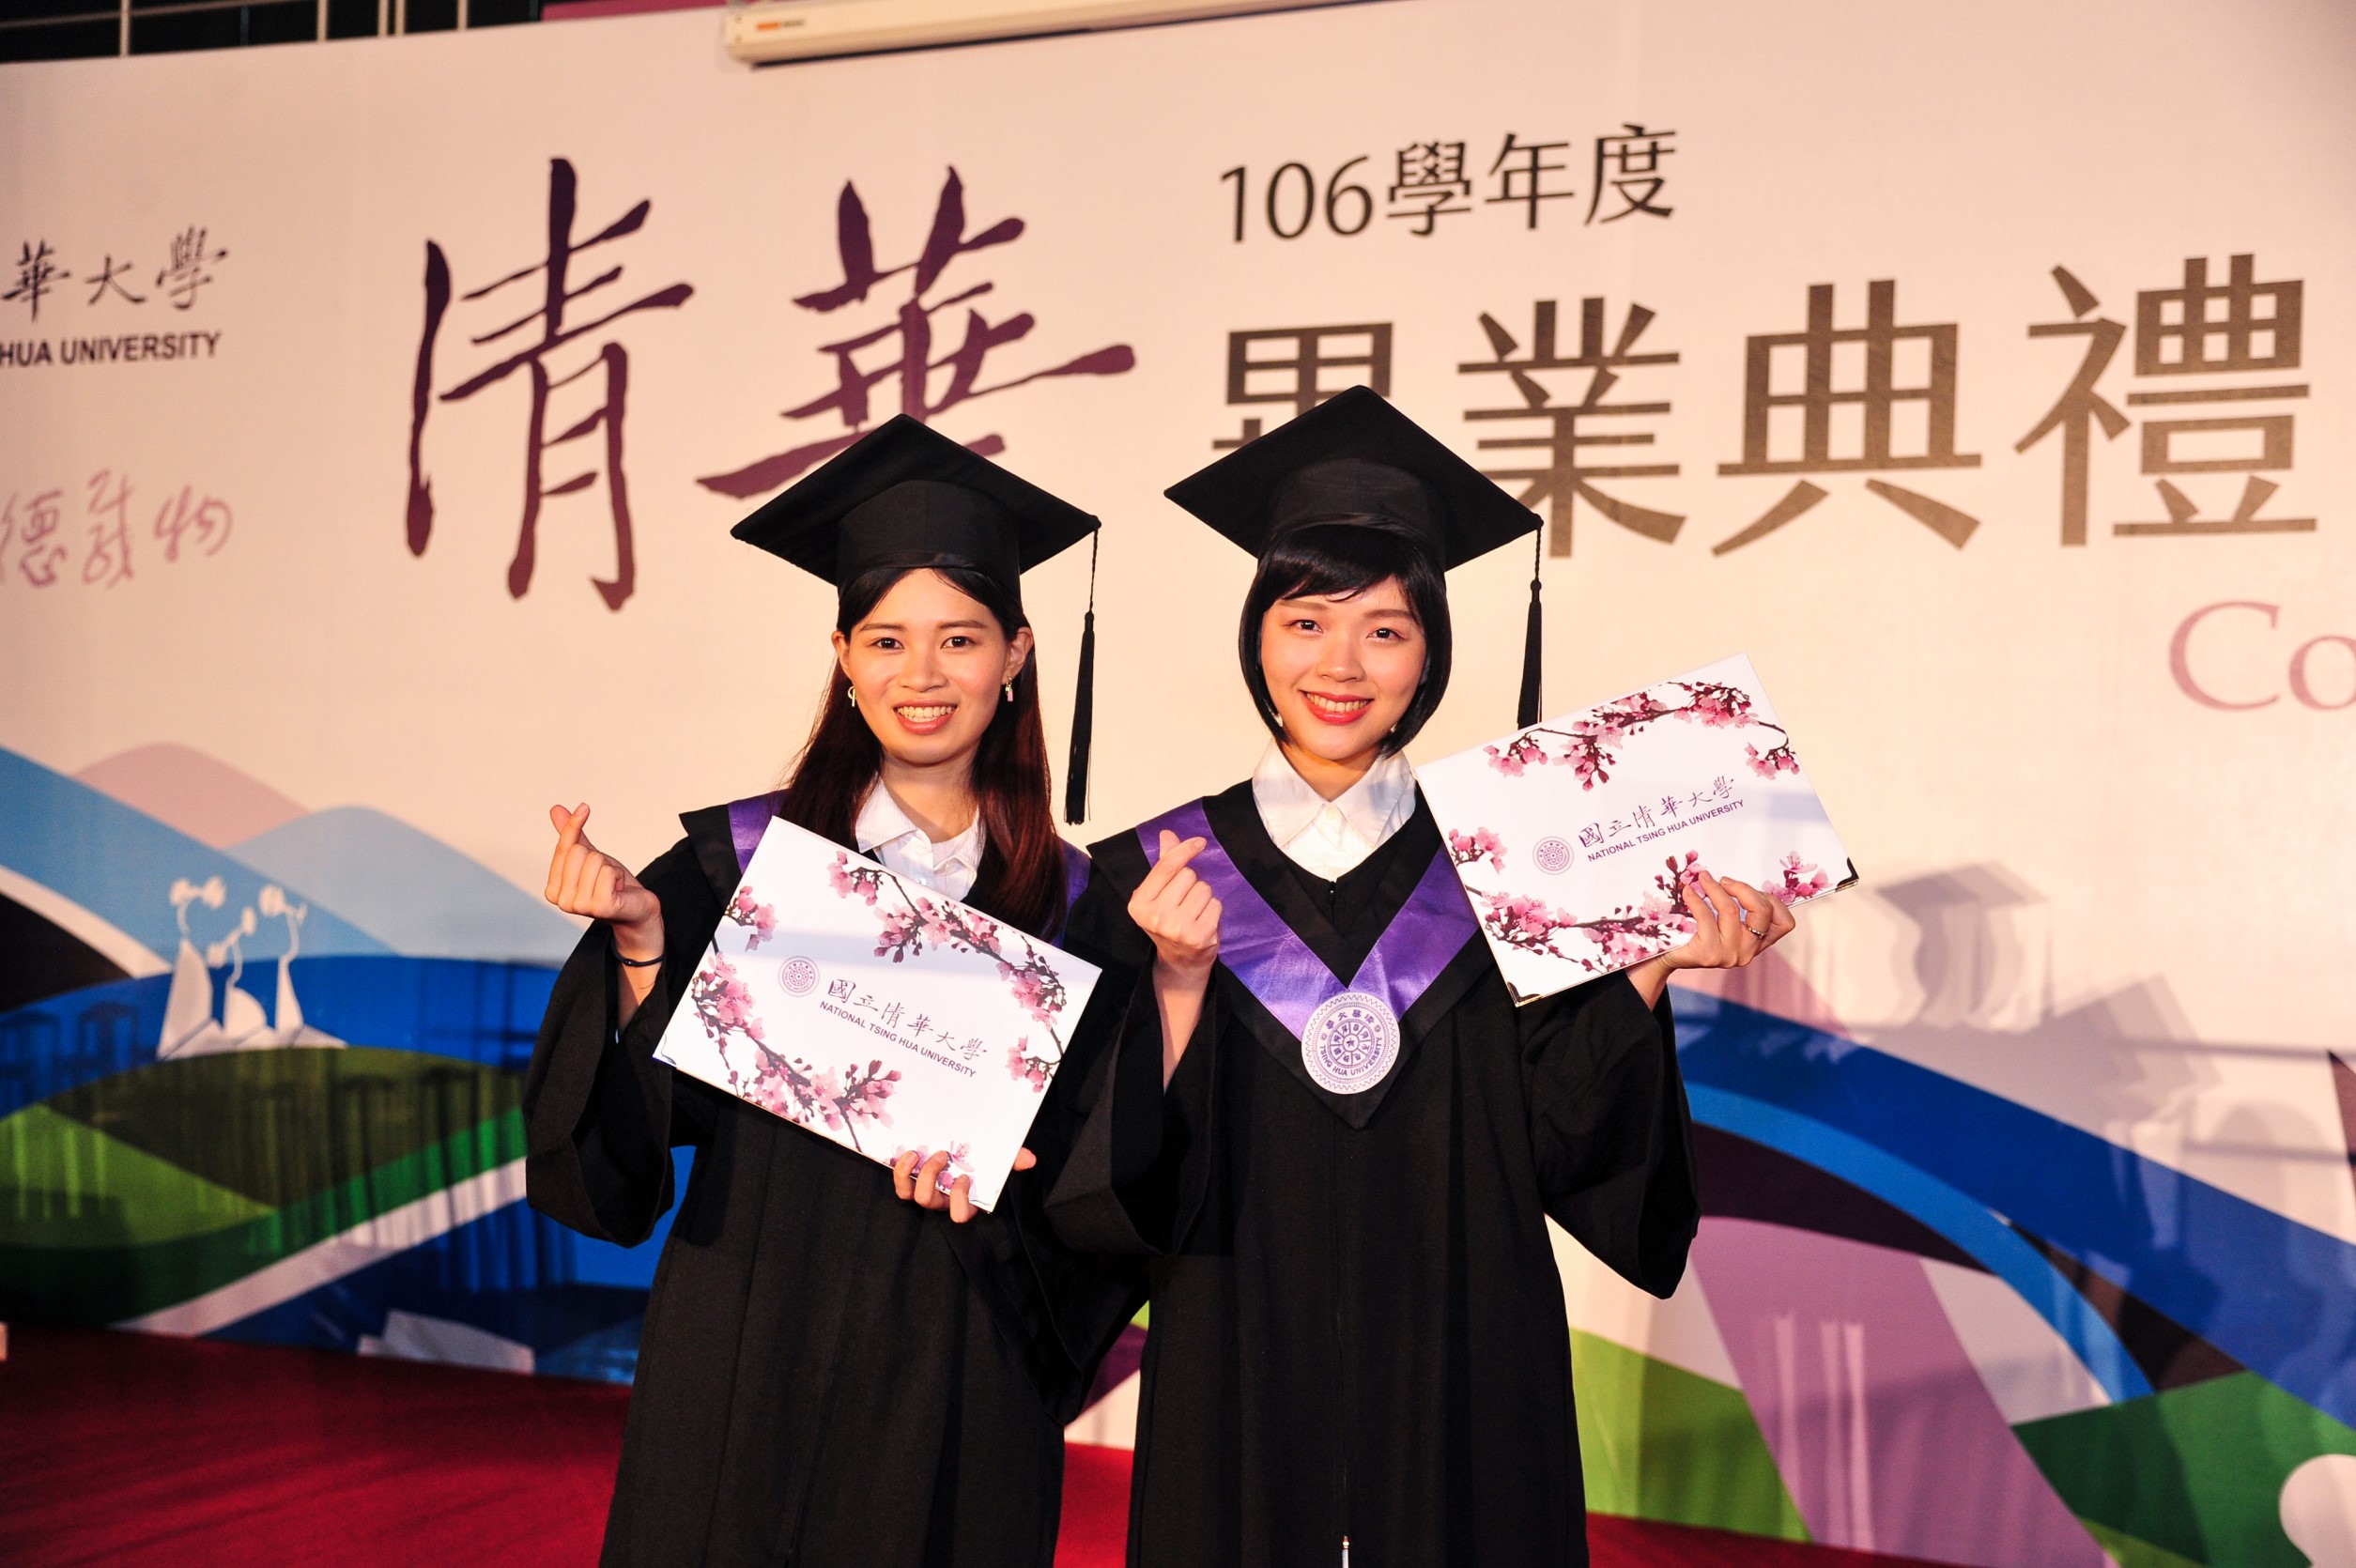 晚間大學部的畢業典禮將由校本部醫科系蔡暟耘(右)、南大校區教科系李昕諮(左)代表全體畢業生致詞。